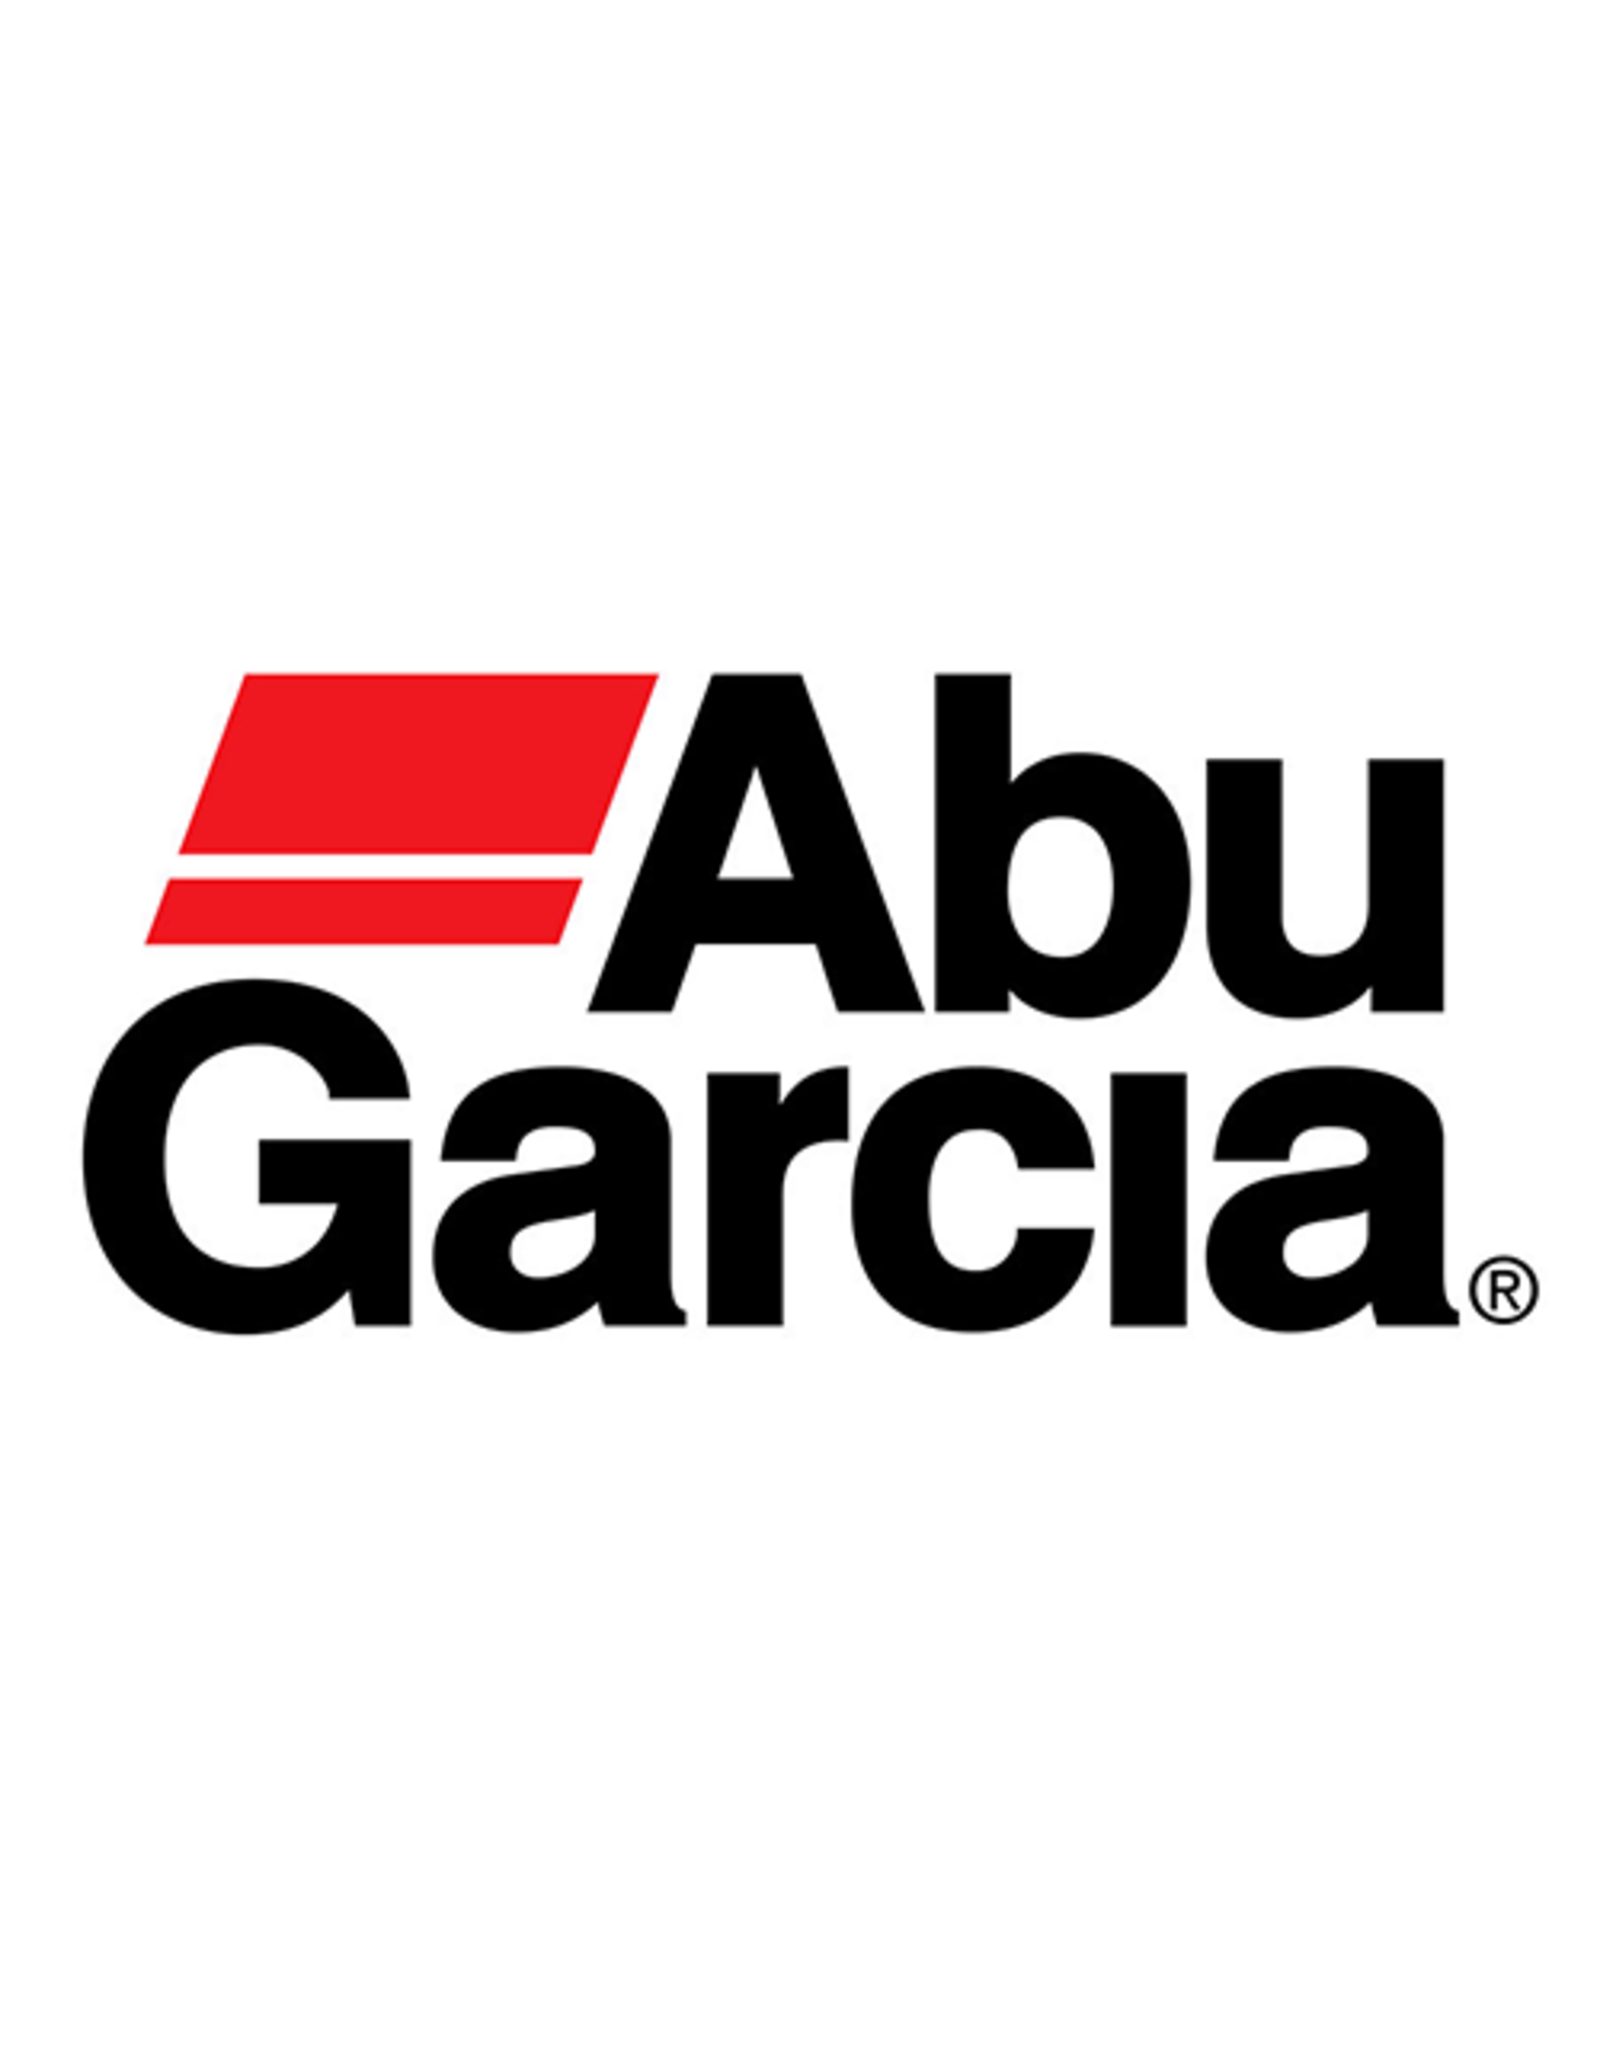 Abu Garcia 1144207  SCREW